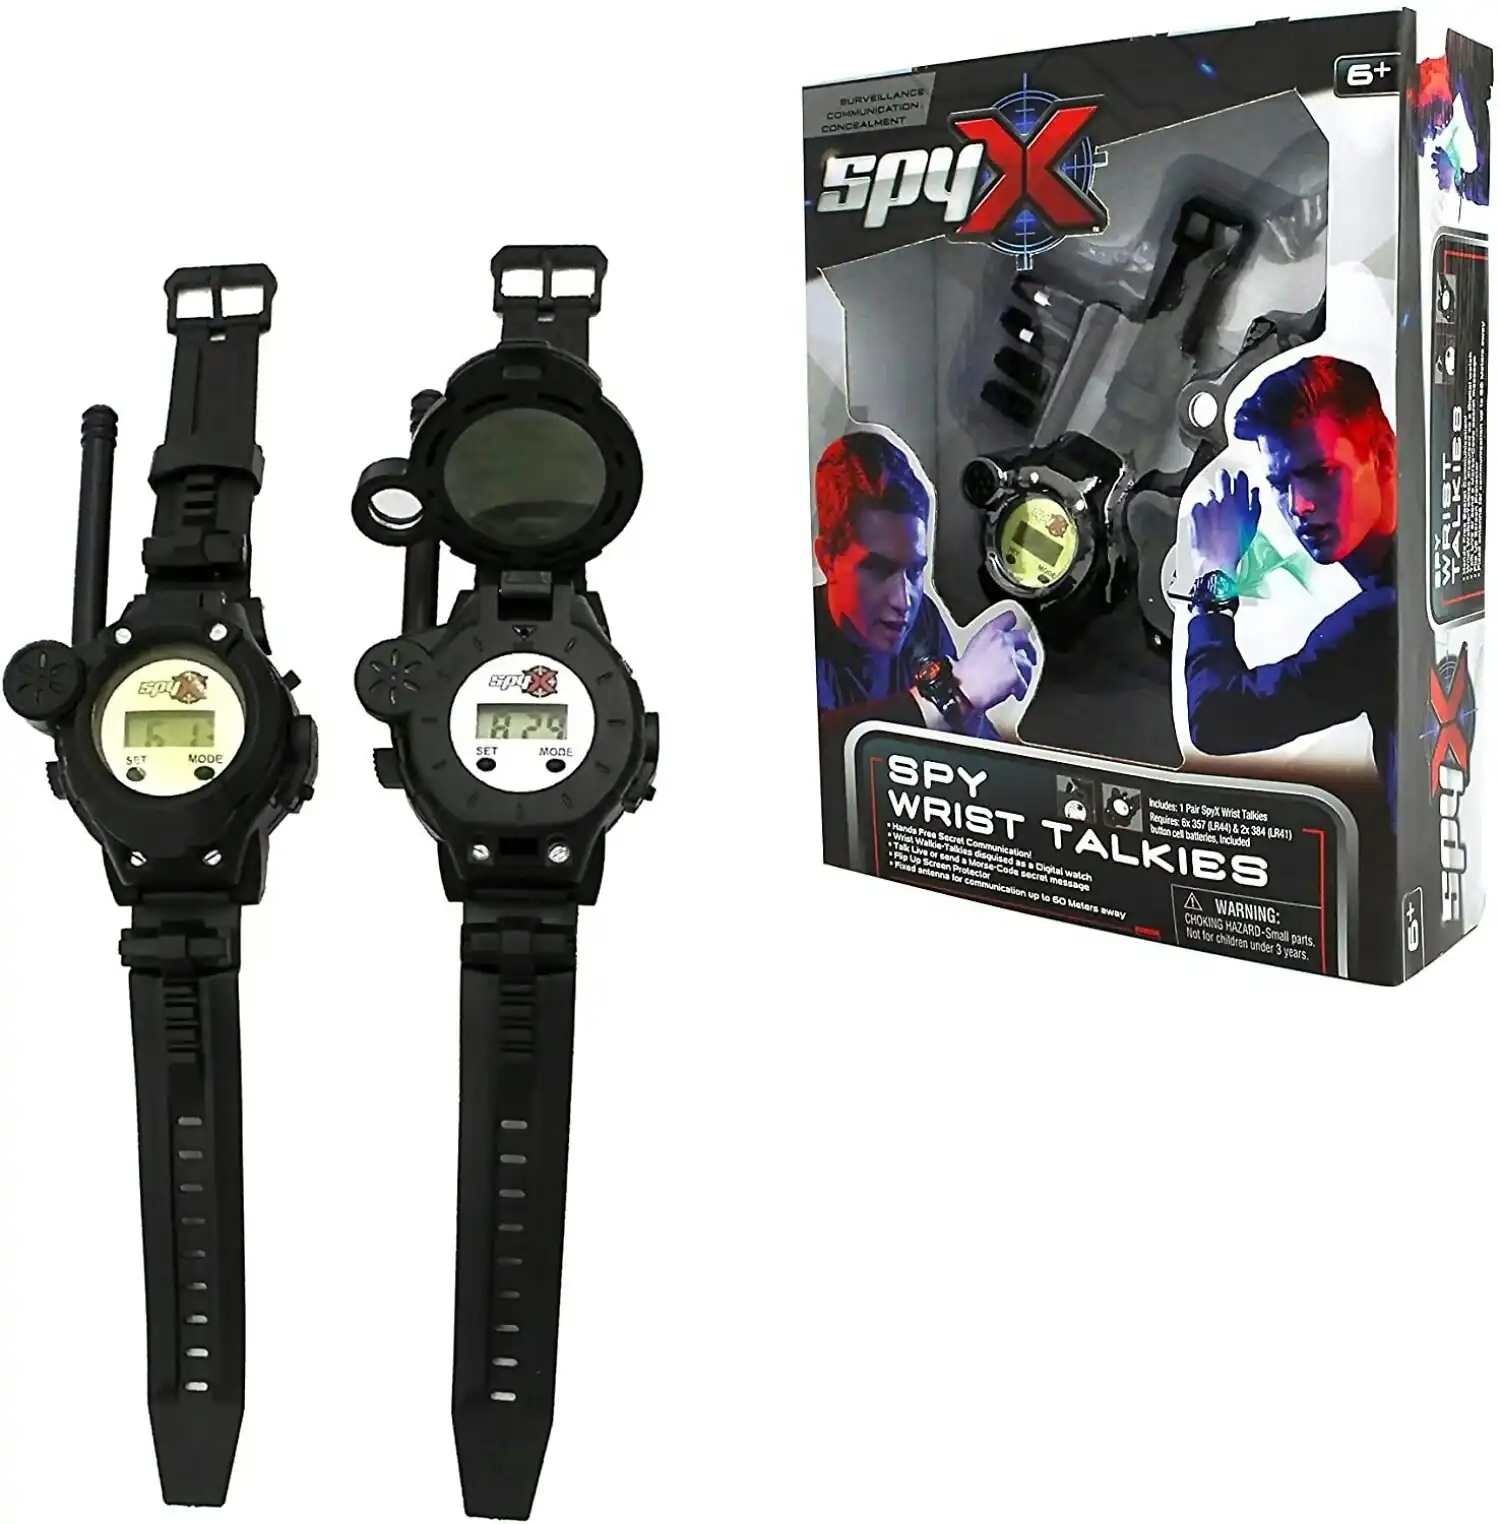 SpyX - Spy Wrist Talkies